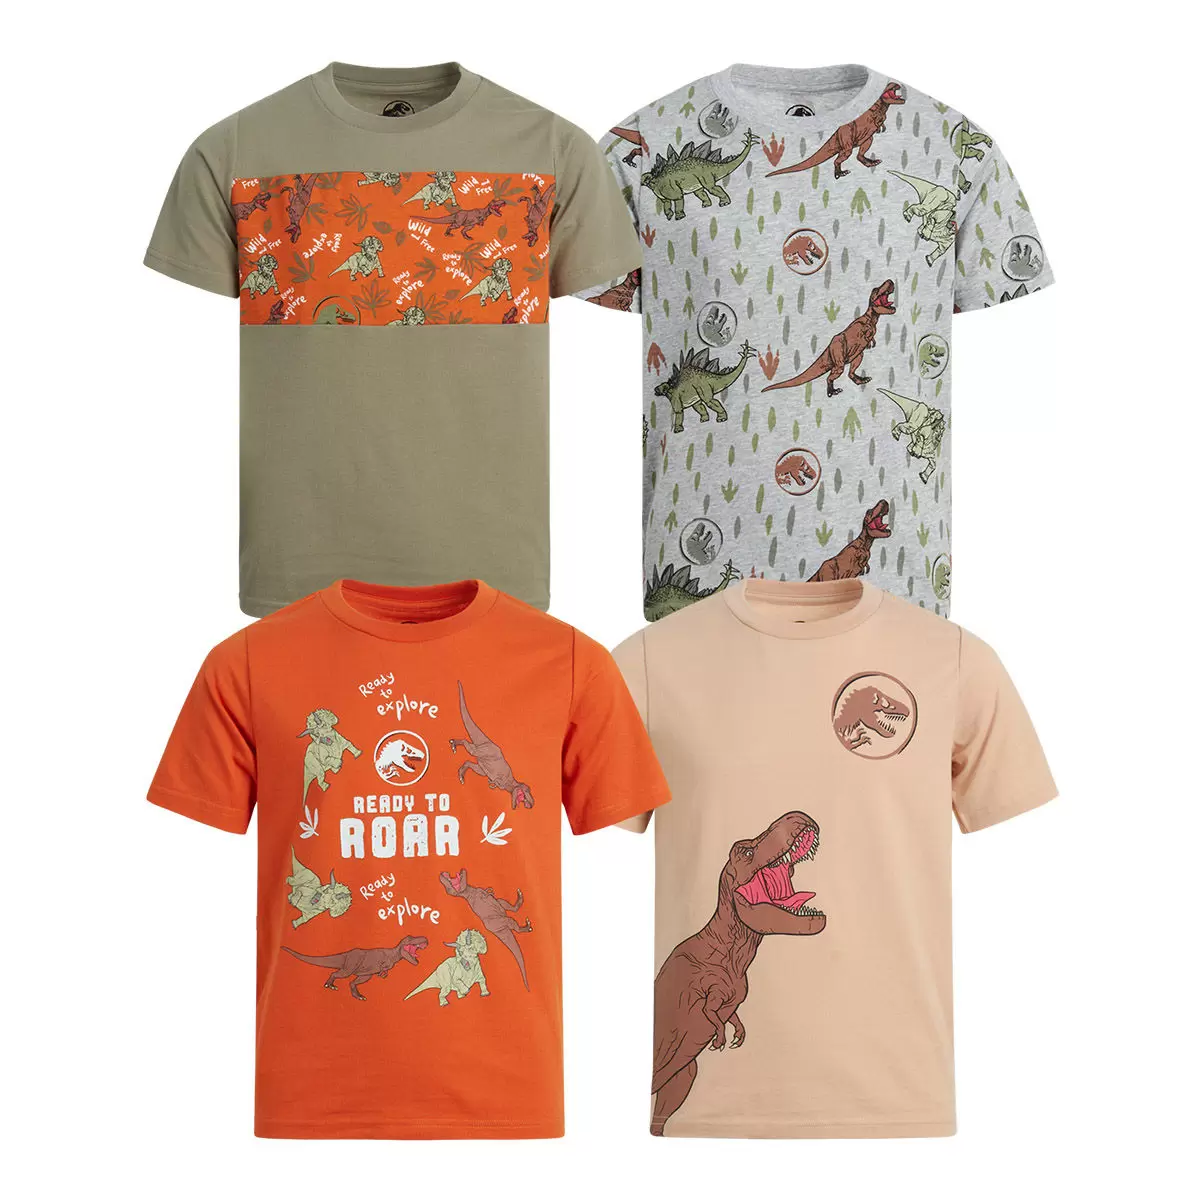 兒童卡通圖案短袖上衣四件組 Jurassic Park 6T